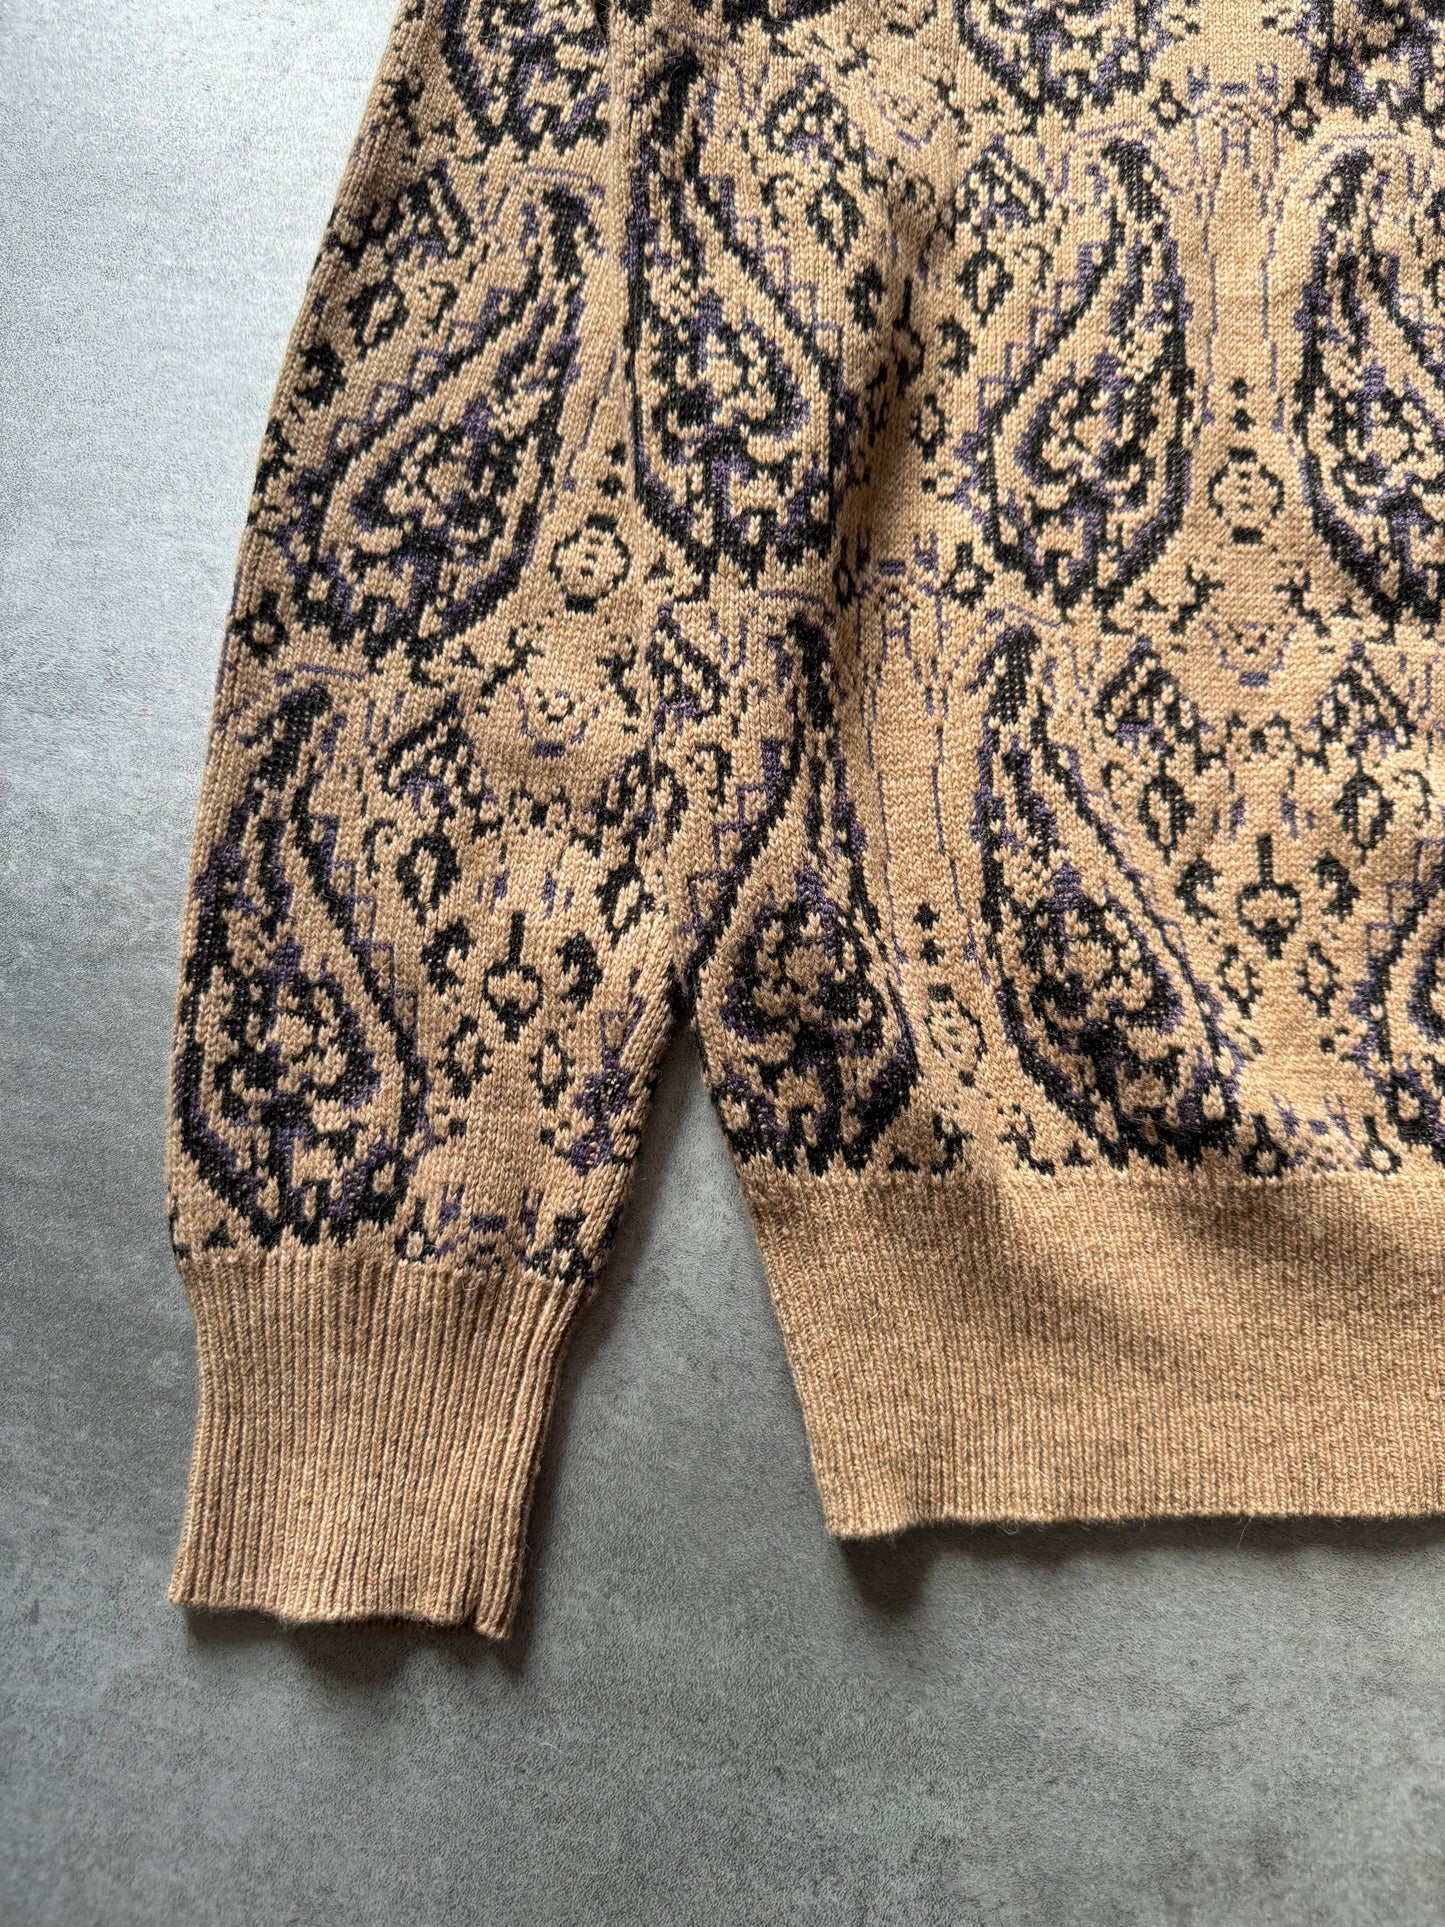 AW2018 Dries Van Noten Precise Camel Sweater (L) - 8